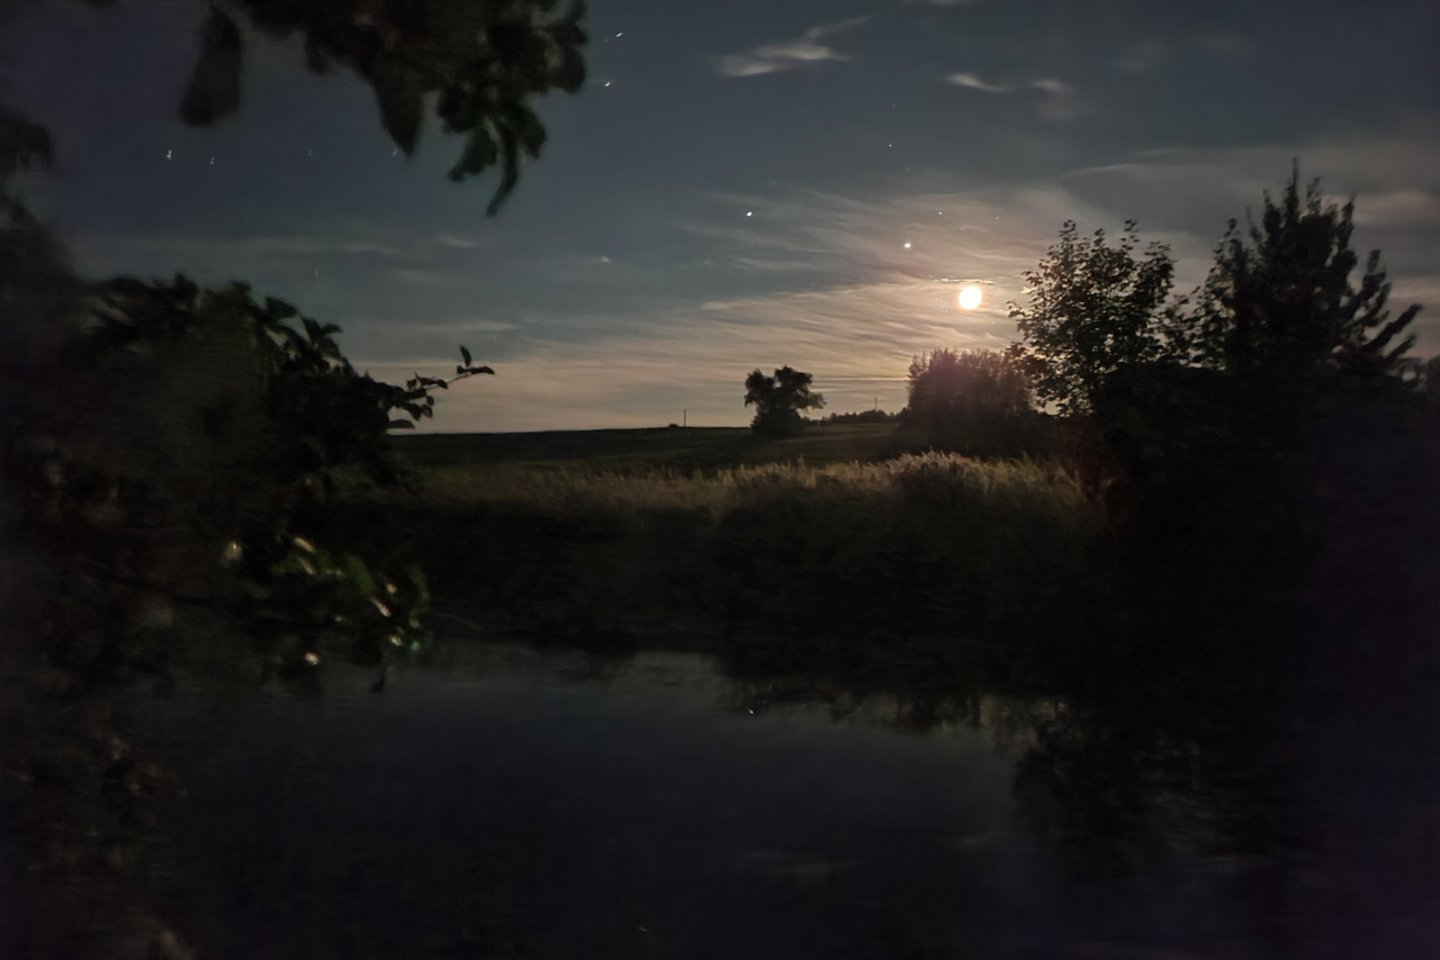  Naktinės fotografijos testas, kaimo vietovė, mėnesiena.<br> A. Rutkausko nuotr.